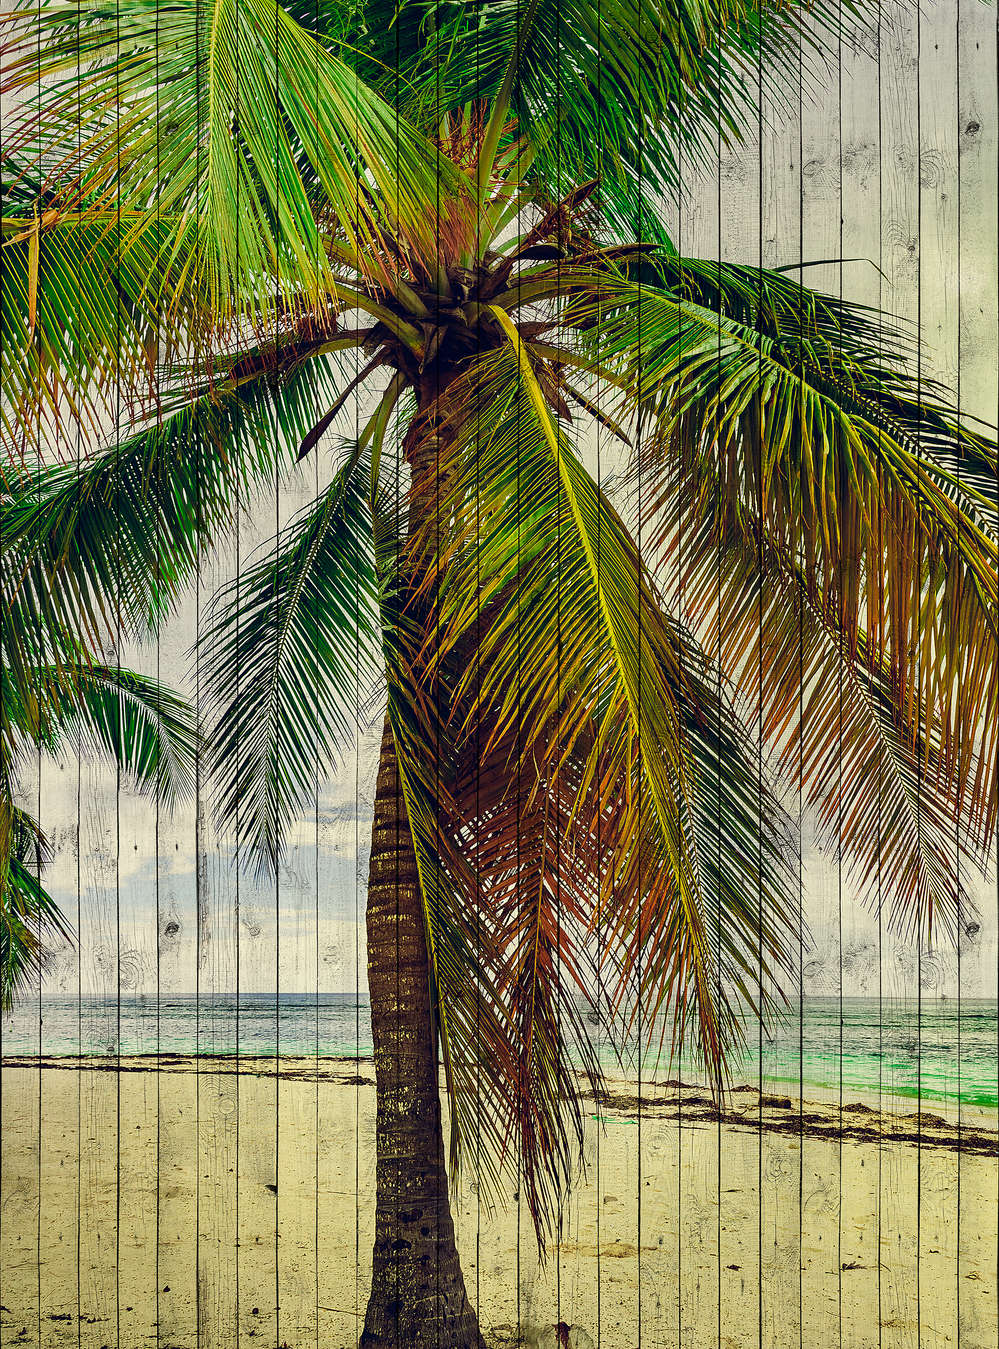             Tahiti 3 - Papel pintado de palmeras con sensación de vacaciones - estructura de paneles de madera - Beige, Azul | Liso mate
        